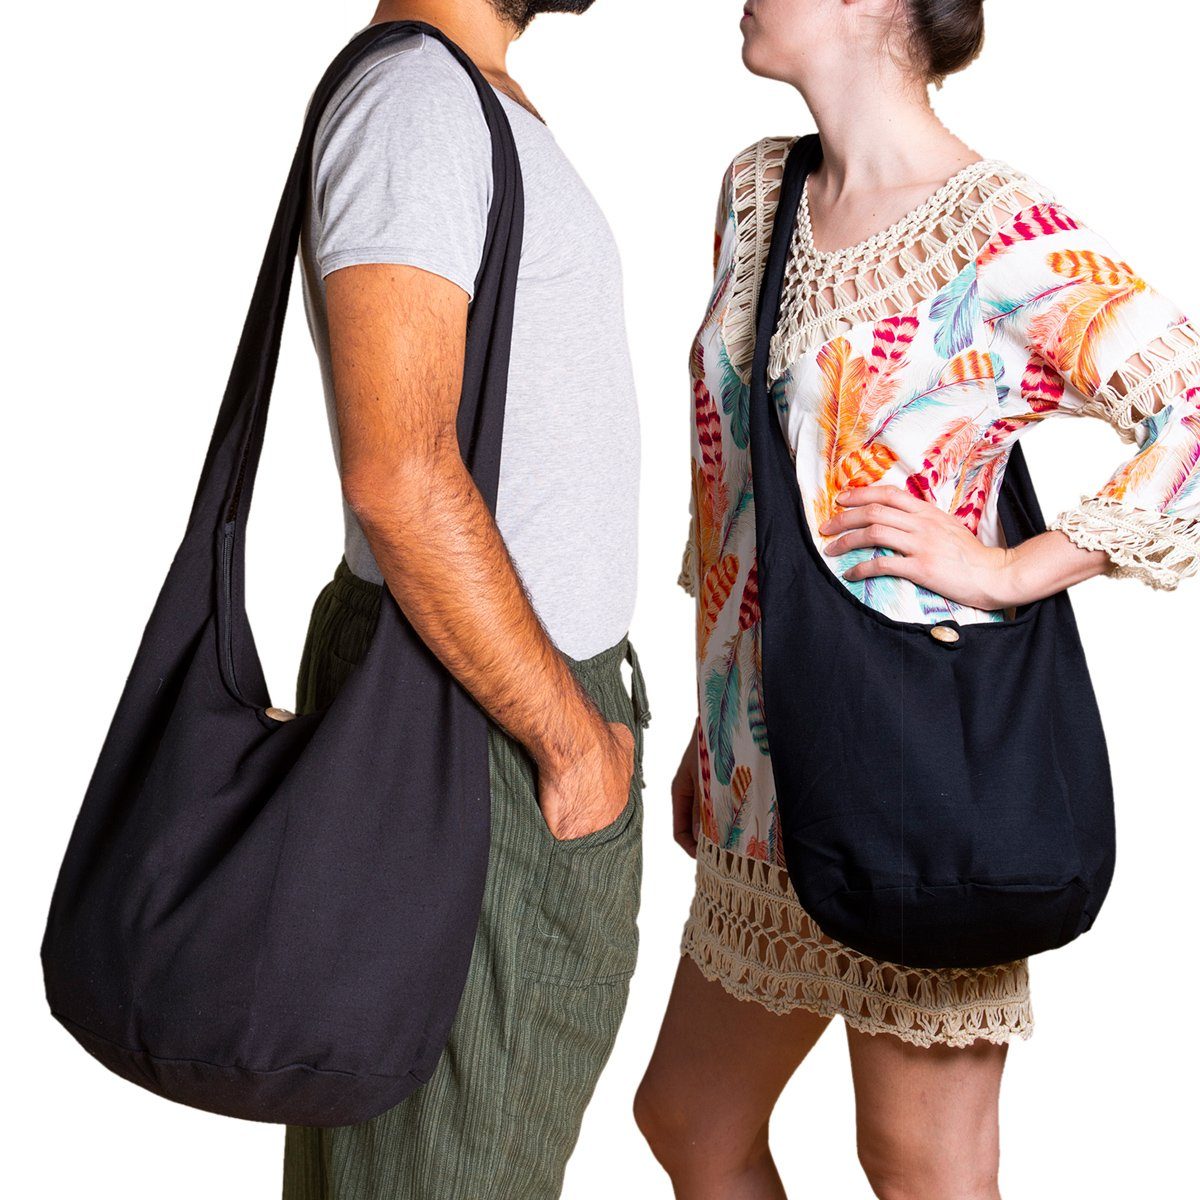 PANASIAM Beuteltasche Schulterbeutel Strandtasche aus Umhängetasche in 2 Größen, als dunkel auch blau 100% oder einfarbig Schultertasche Handtasche Wickeltasche Baumwolle